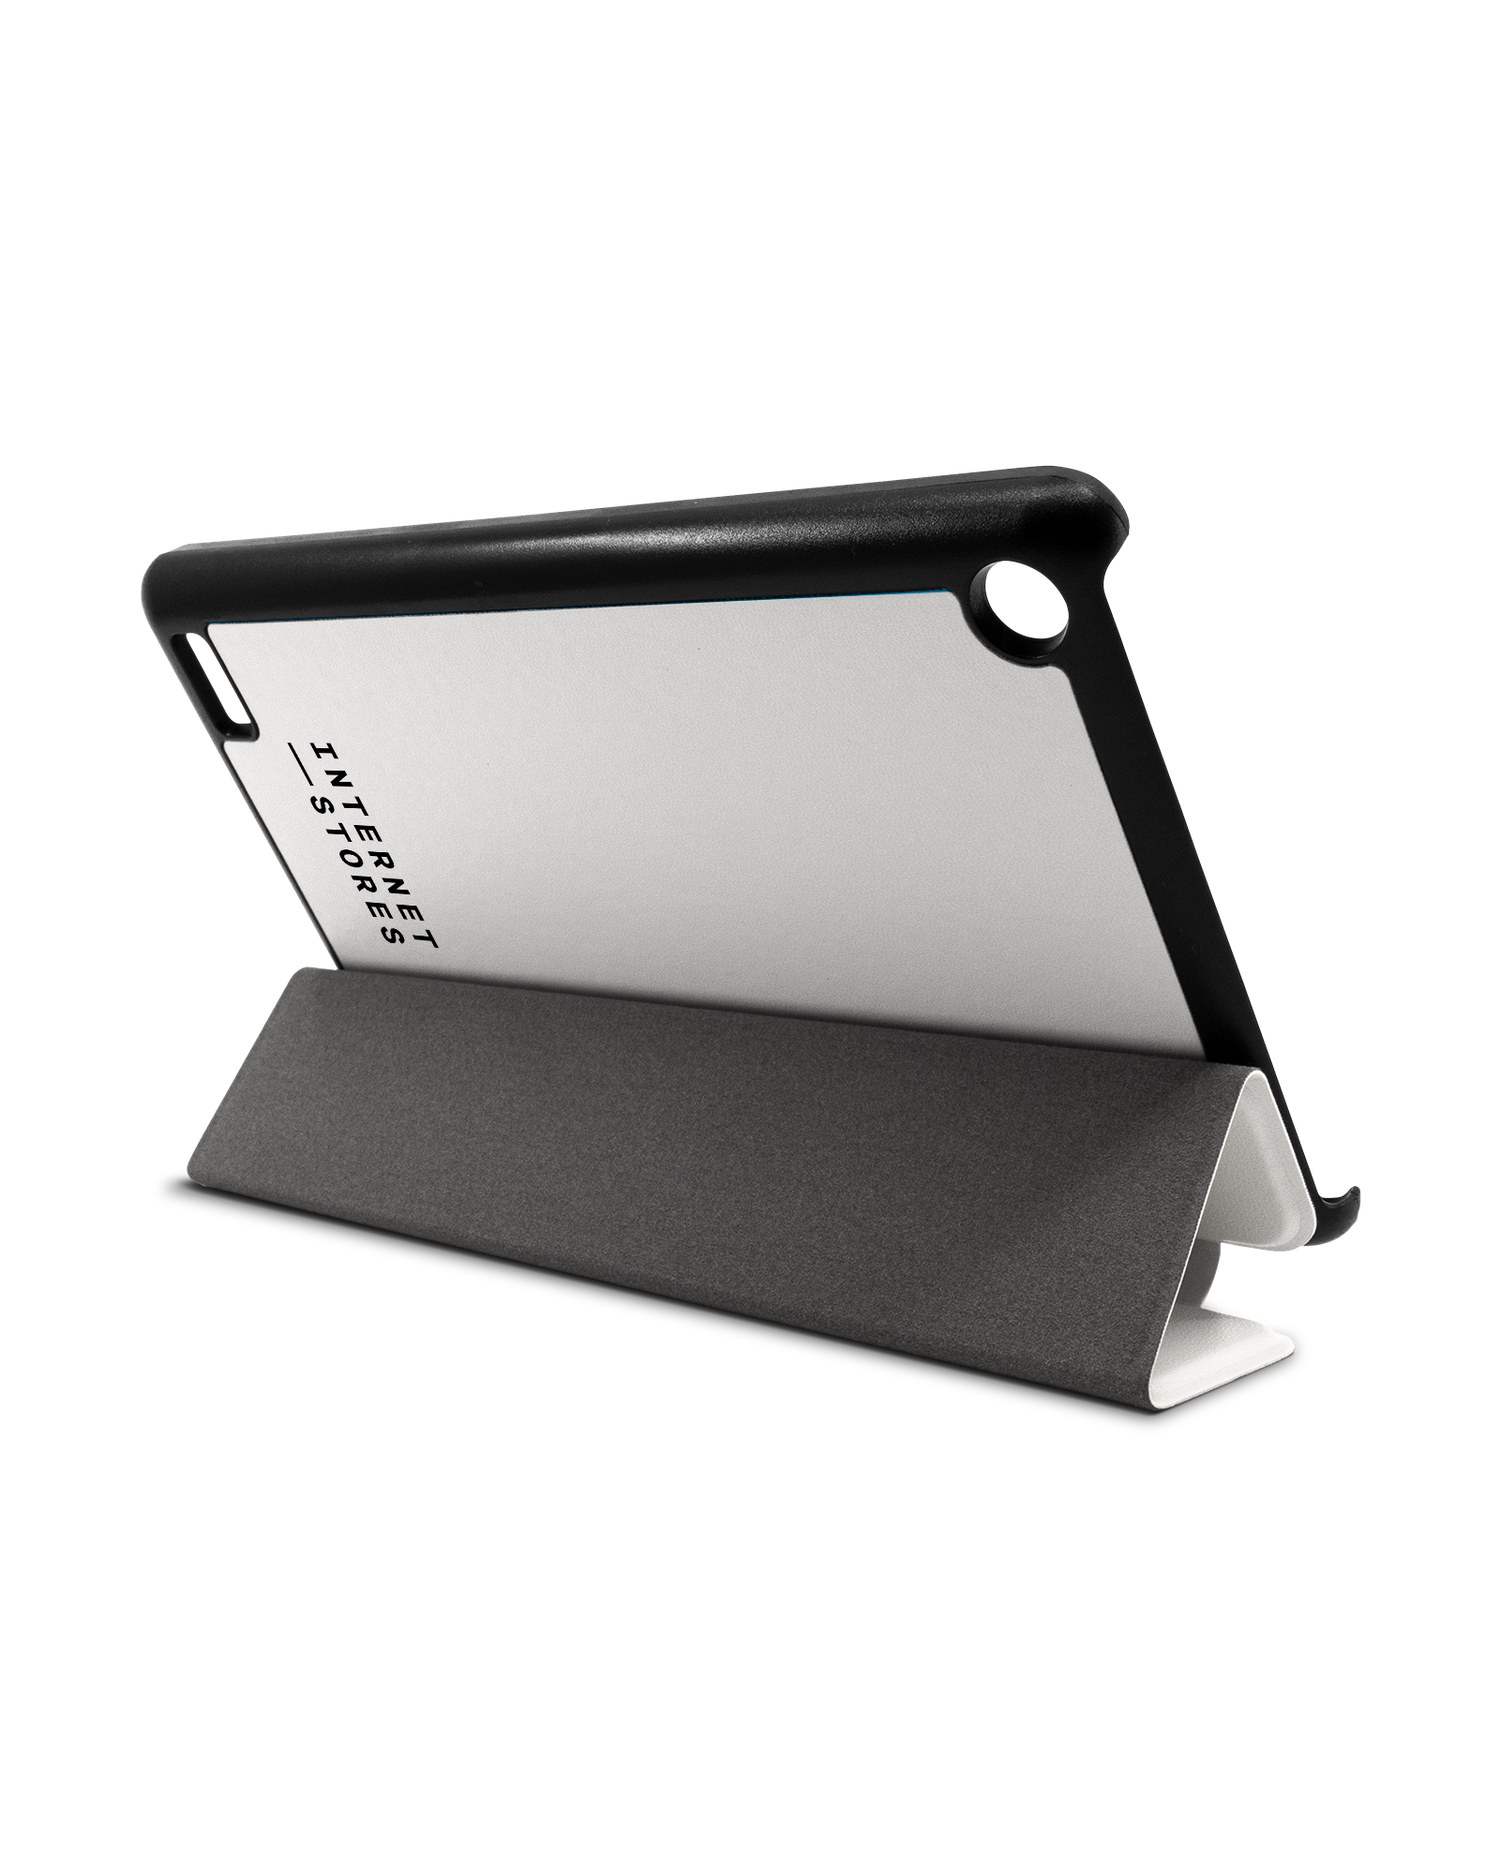 ISG White Tablet Smart Case für Amazon Fire 7: Aufgestellt im Querformat